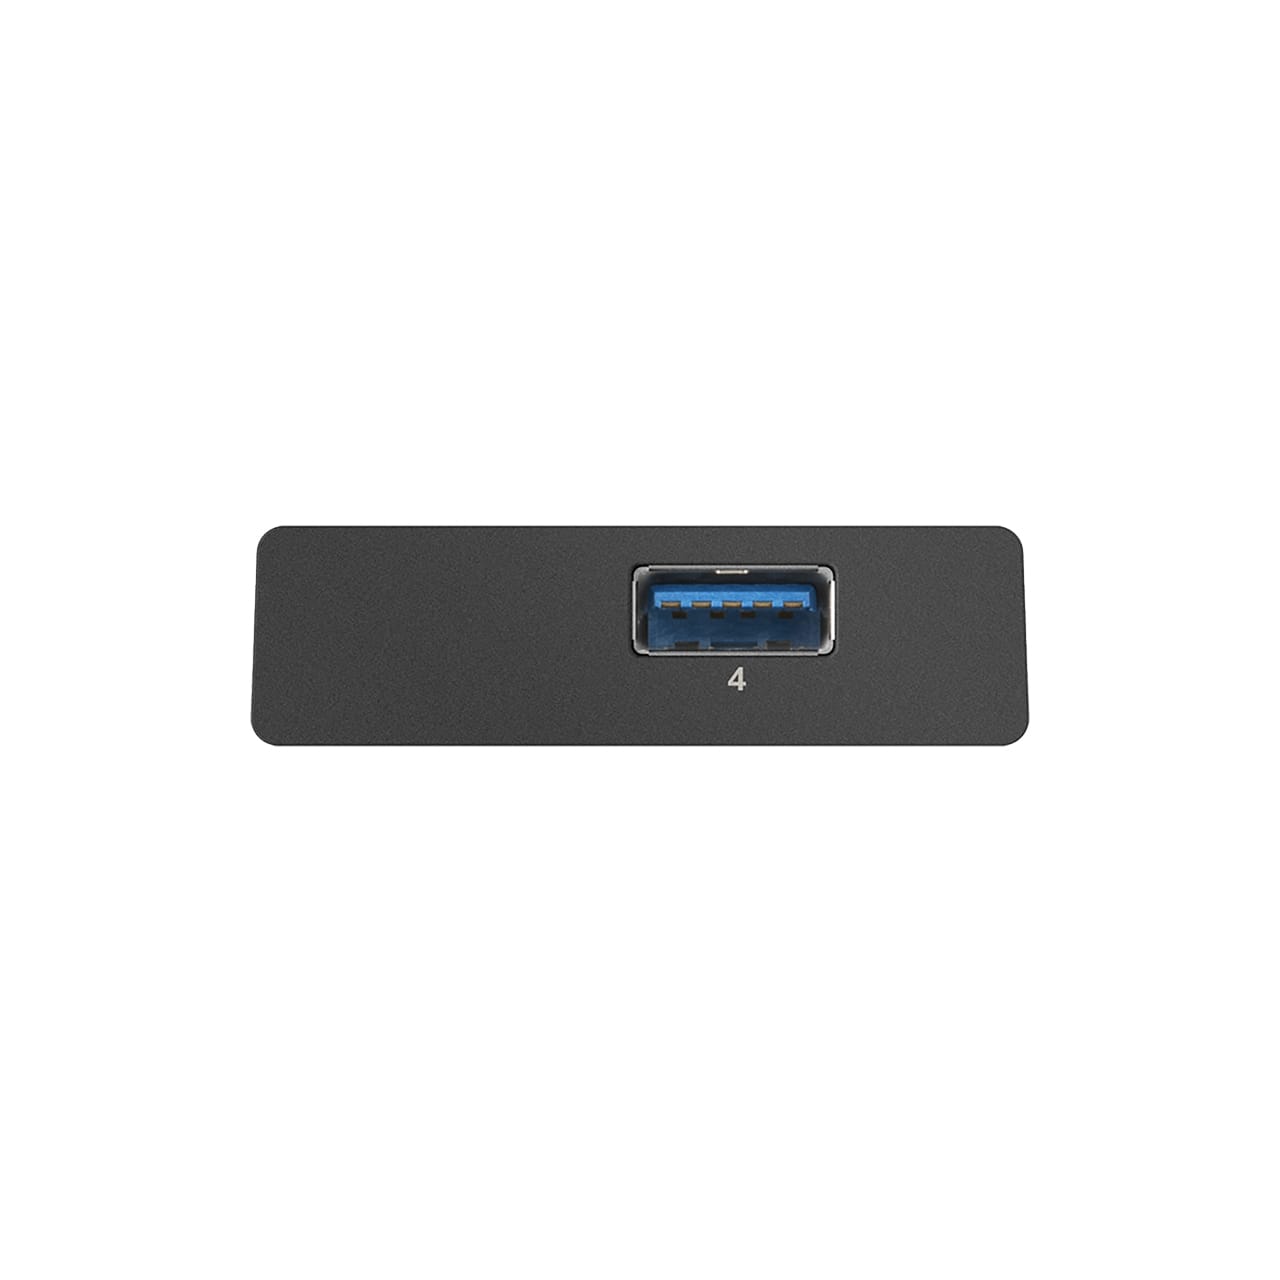 هاب 4 پورت USB 3.0 دی لینک مدل DUB-1340